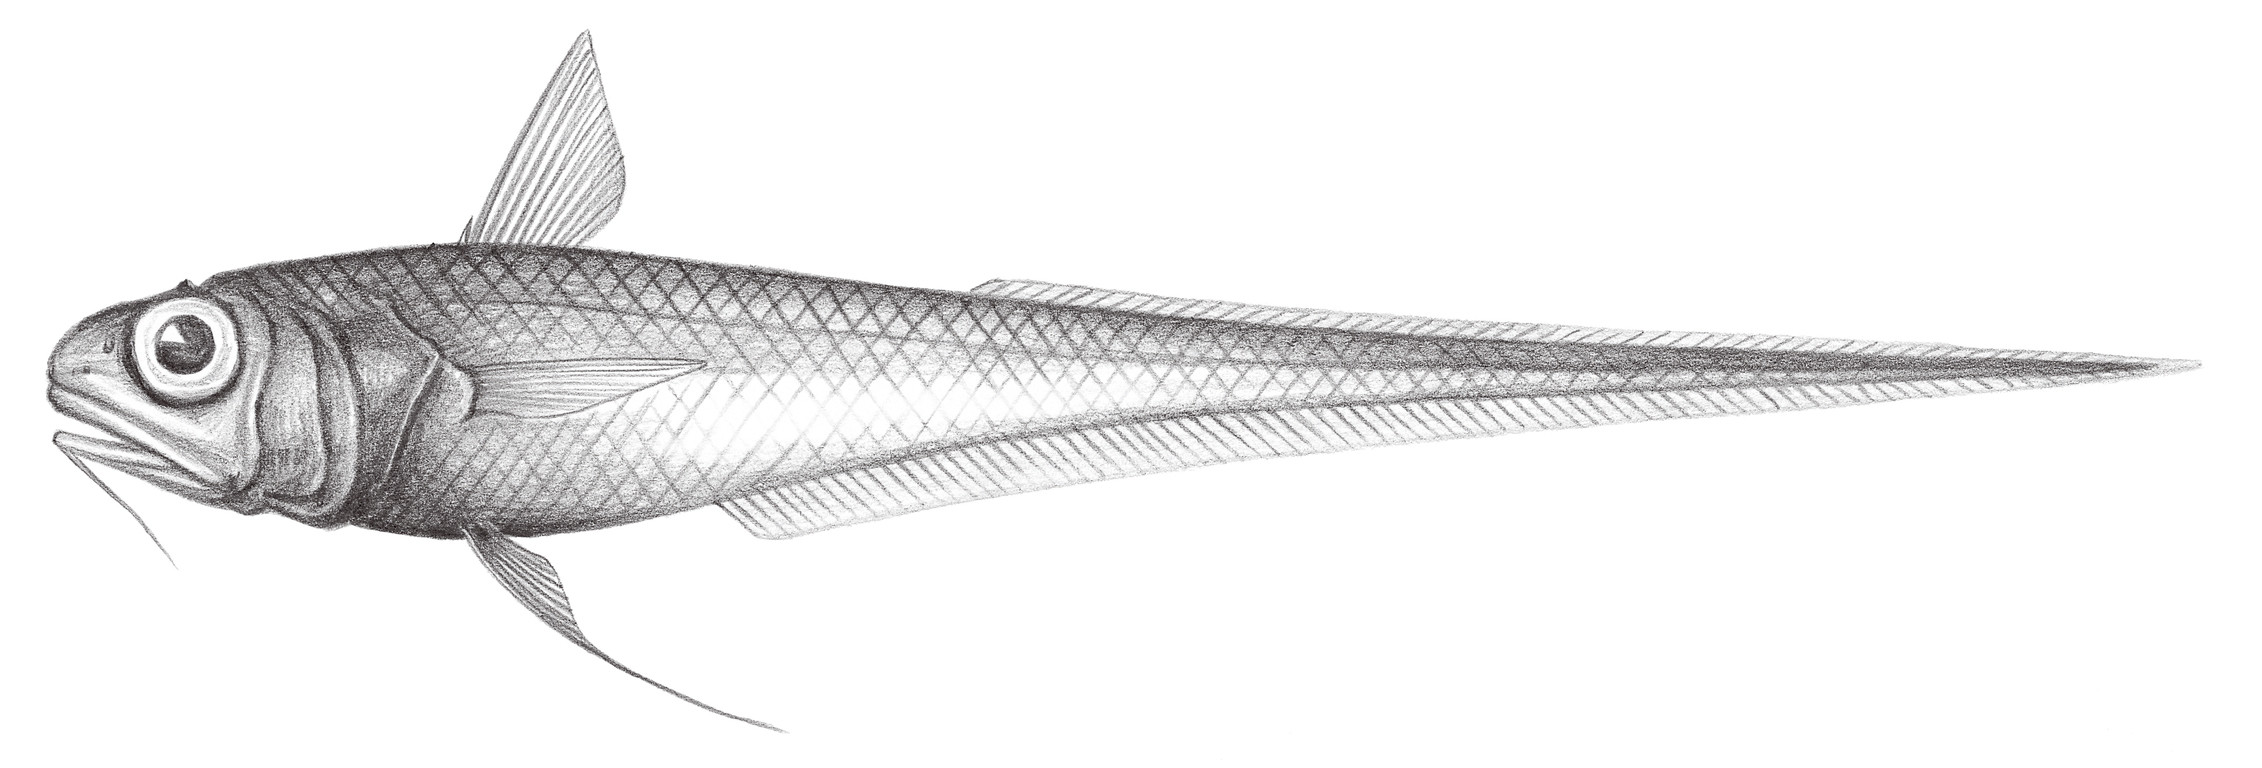 580.	長頭膜首鱈 Hymenocephalus longiceps Smith & Radeliffe, 1912